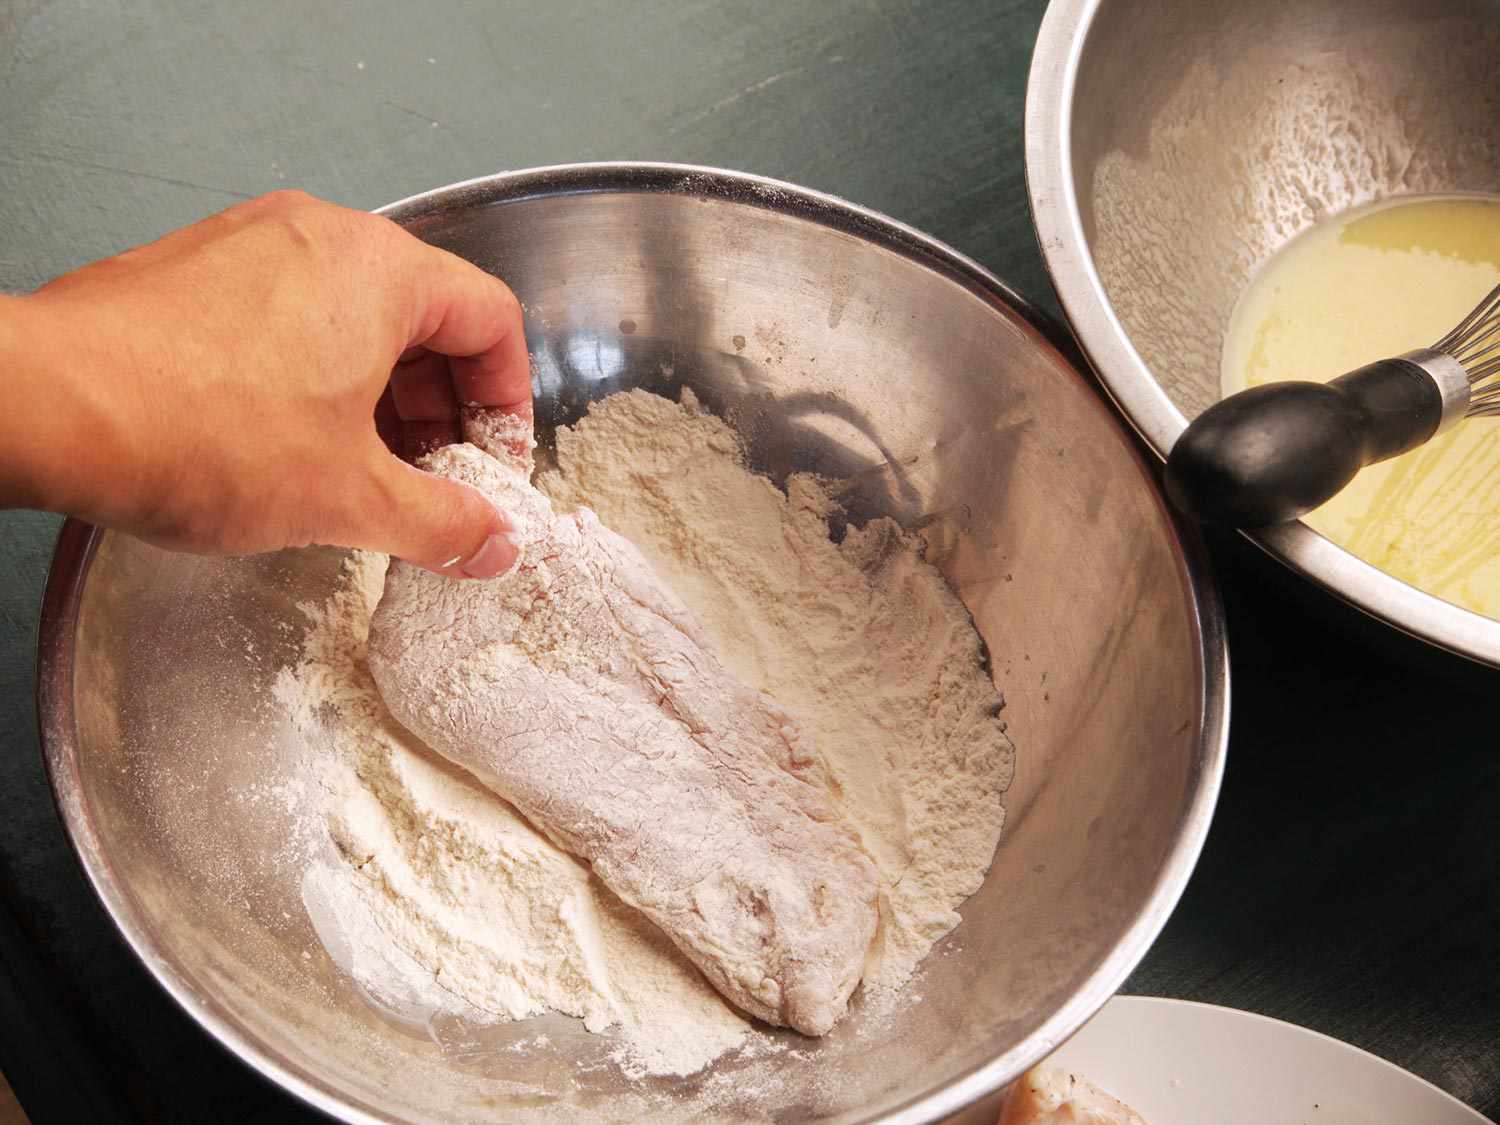 Dredging chicken breast in flour